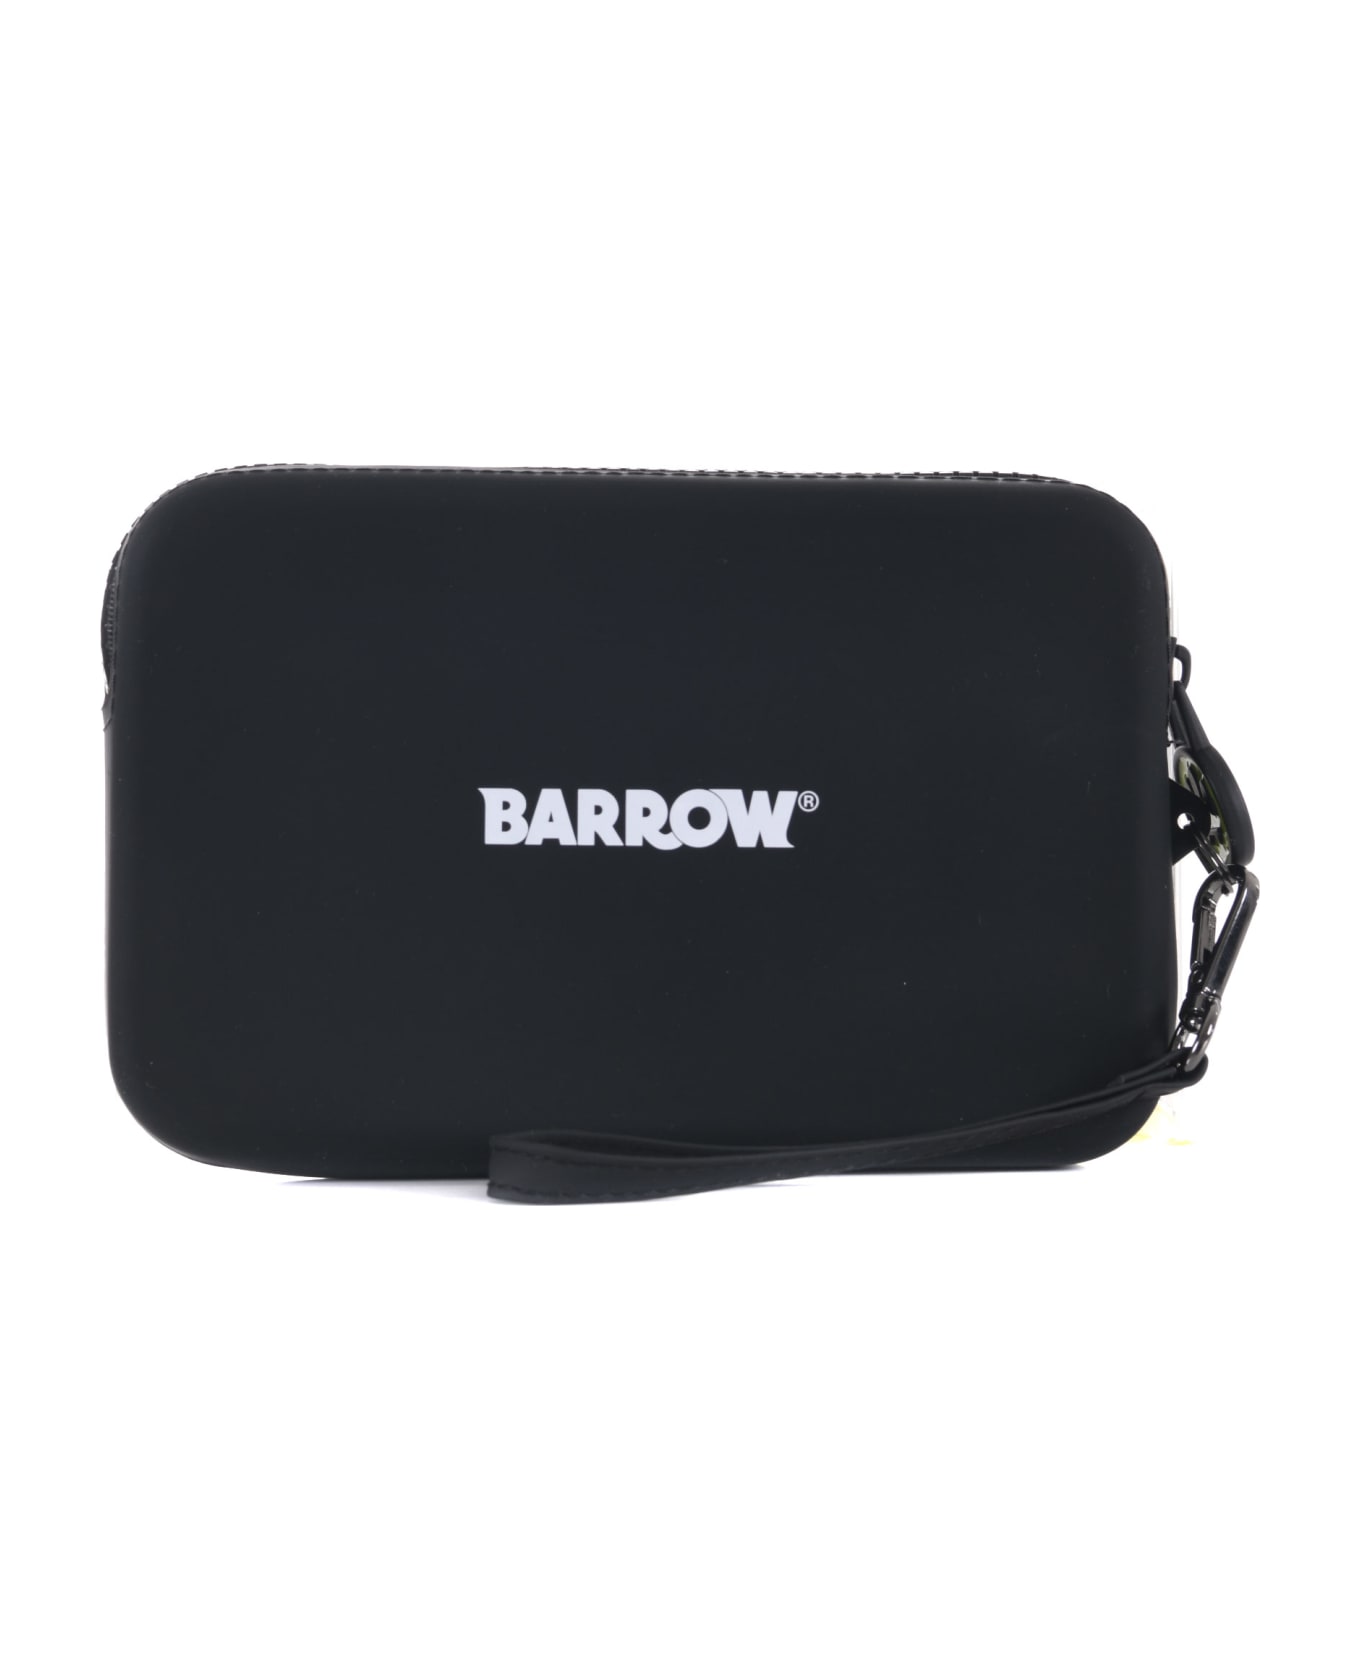 Barrow Clutch Bag - Nero/giallo fluo